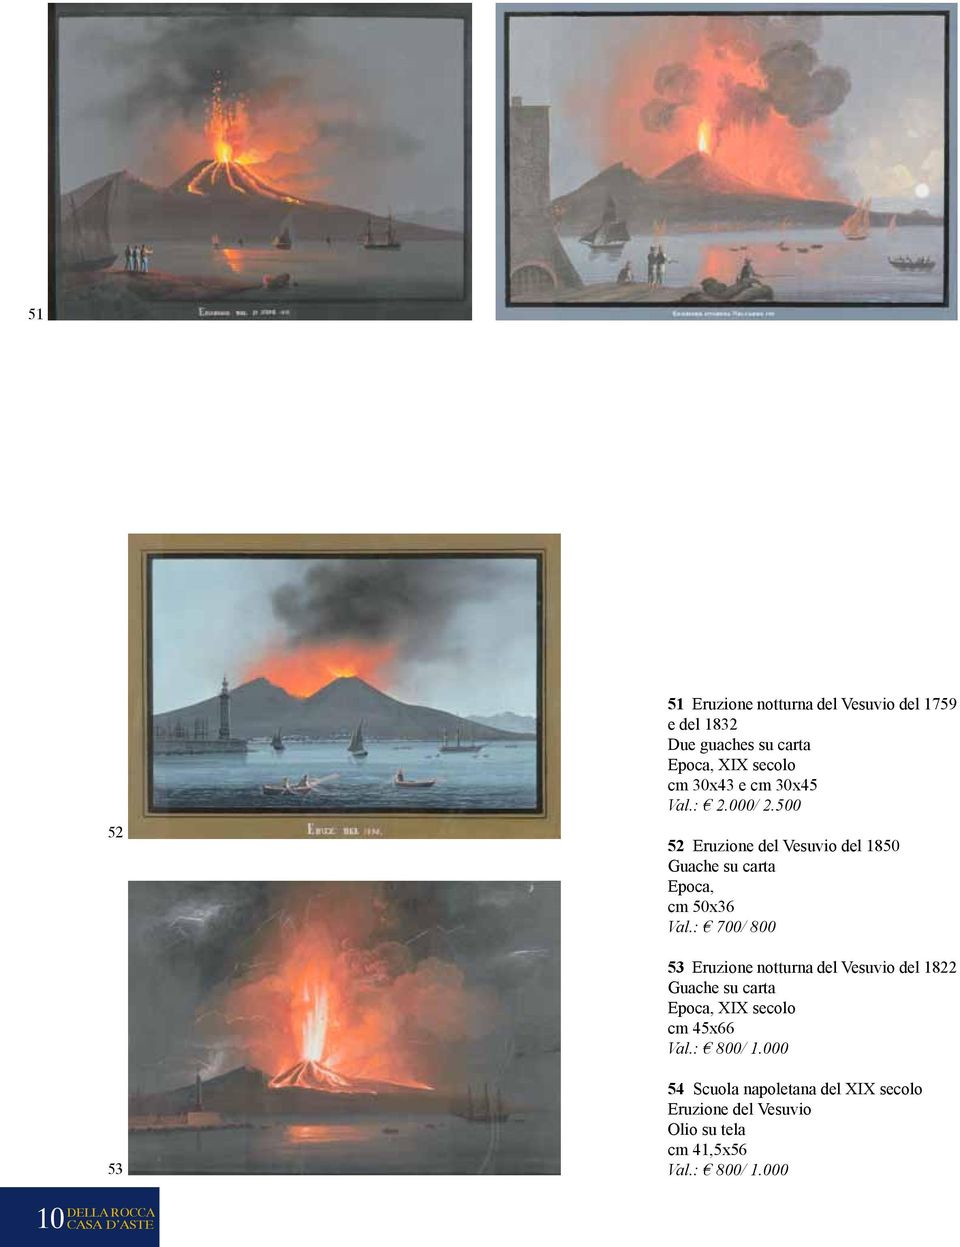 : 700/ 800 53 Eruzione notturna del Vesuvio del 1822 Guache su carta Epoca, XIX secolo cm 45x66 Val.: 800/ 1.